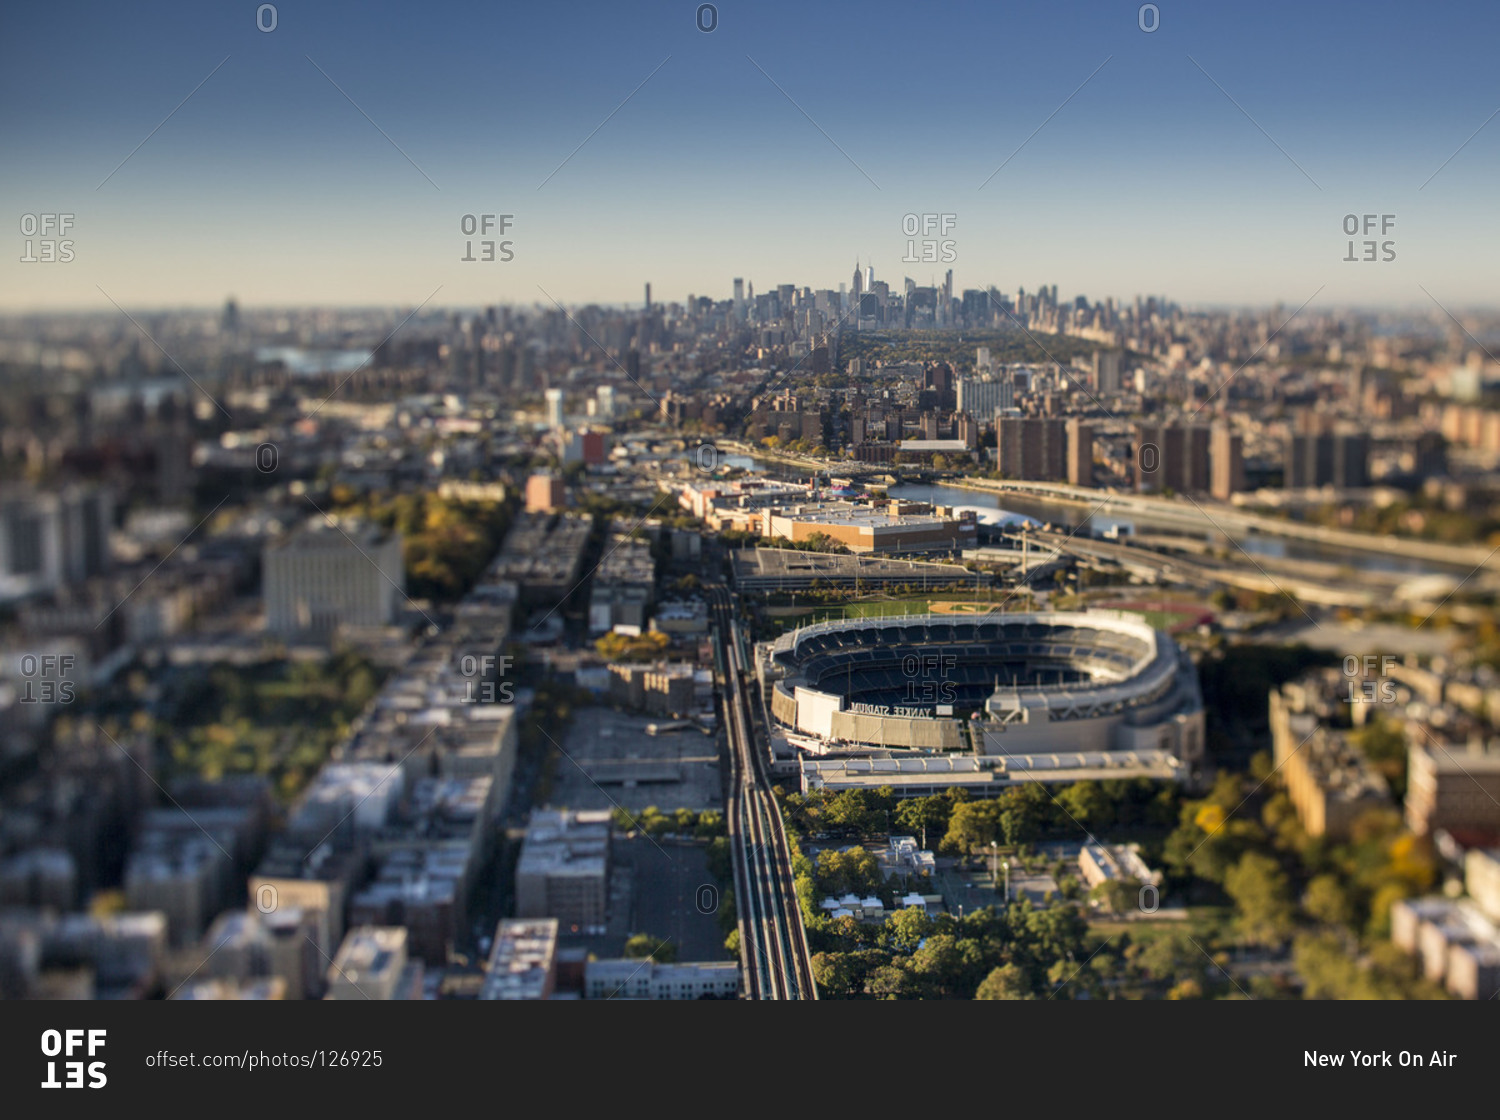 NEW YORK: YANKEE STADIUM. Aerial view of Yankee Stadium in